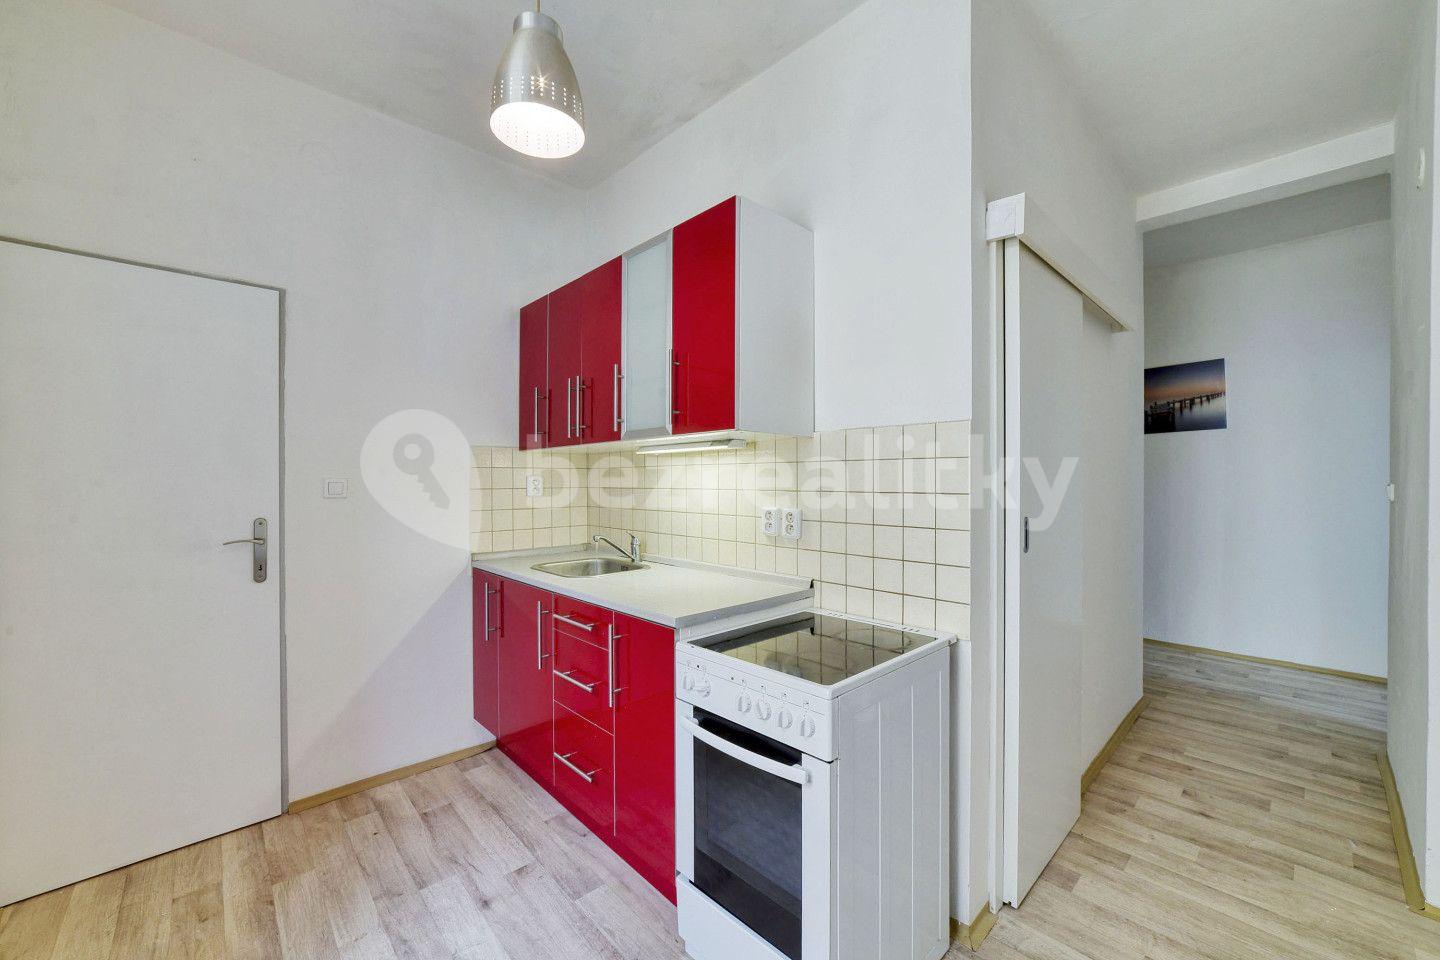 2 bedroom flat for sale, 48 m², Hlavní třída, Mariánské Lázně, Karlovarský Region